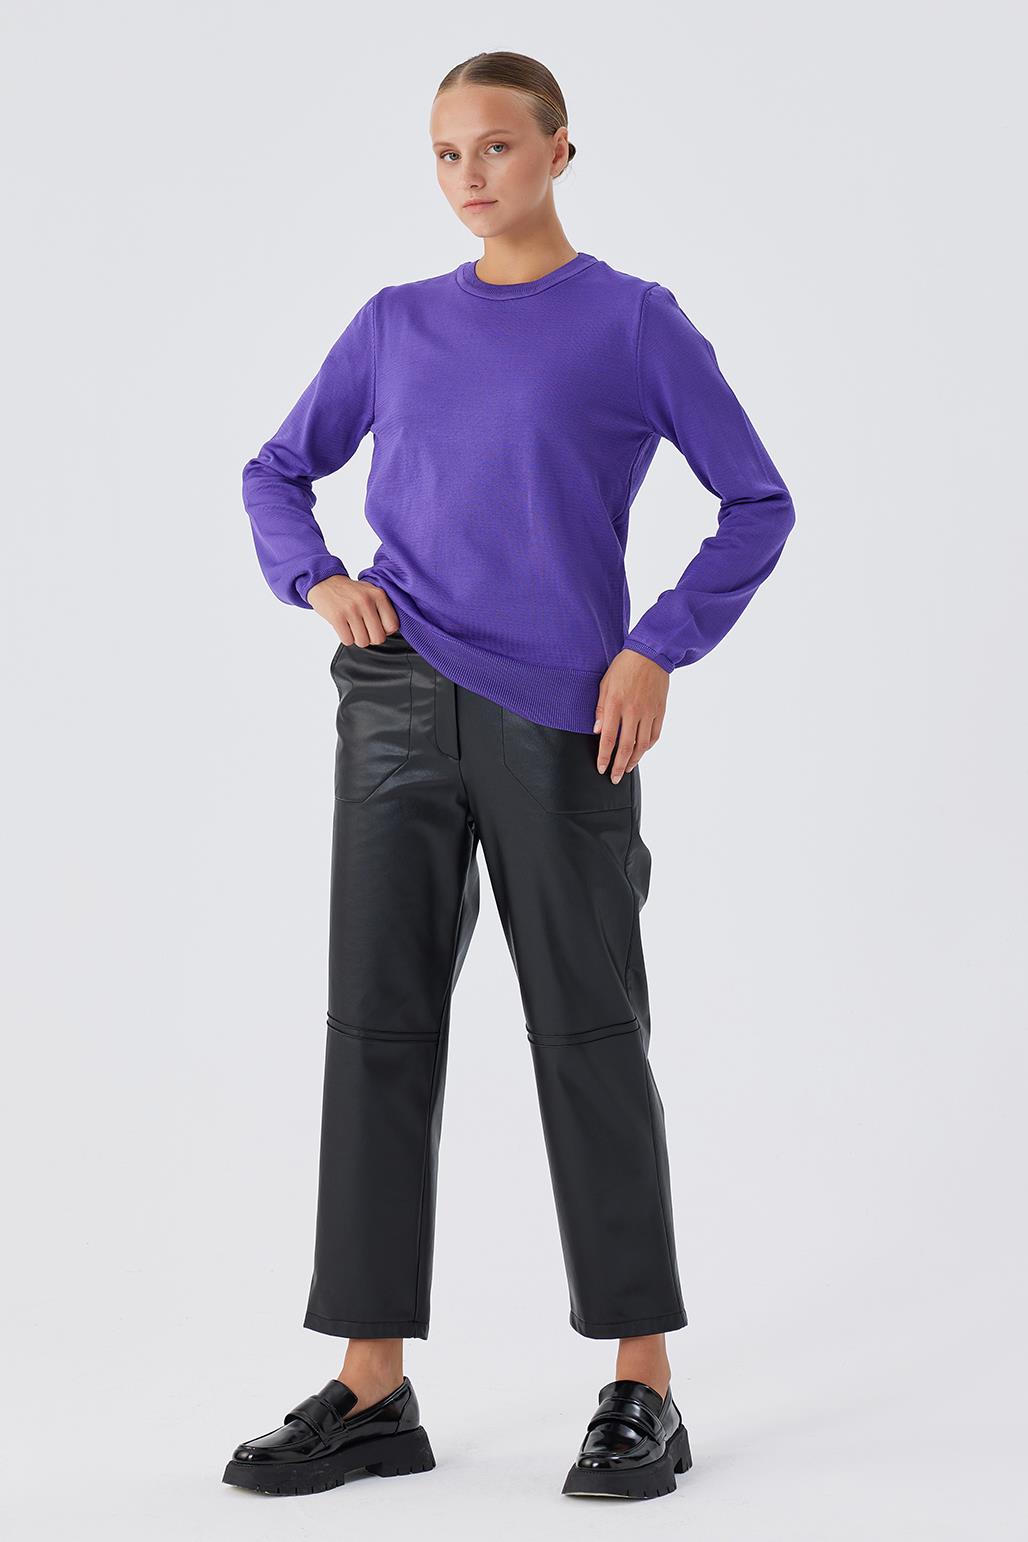 Knitwear Basic Sweater Purple